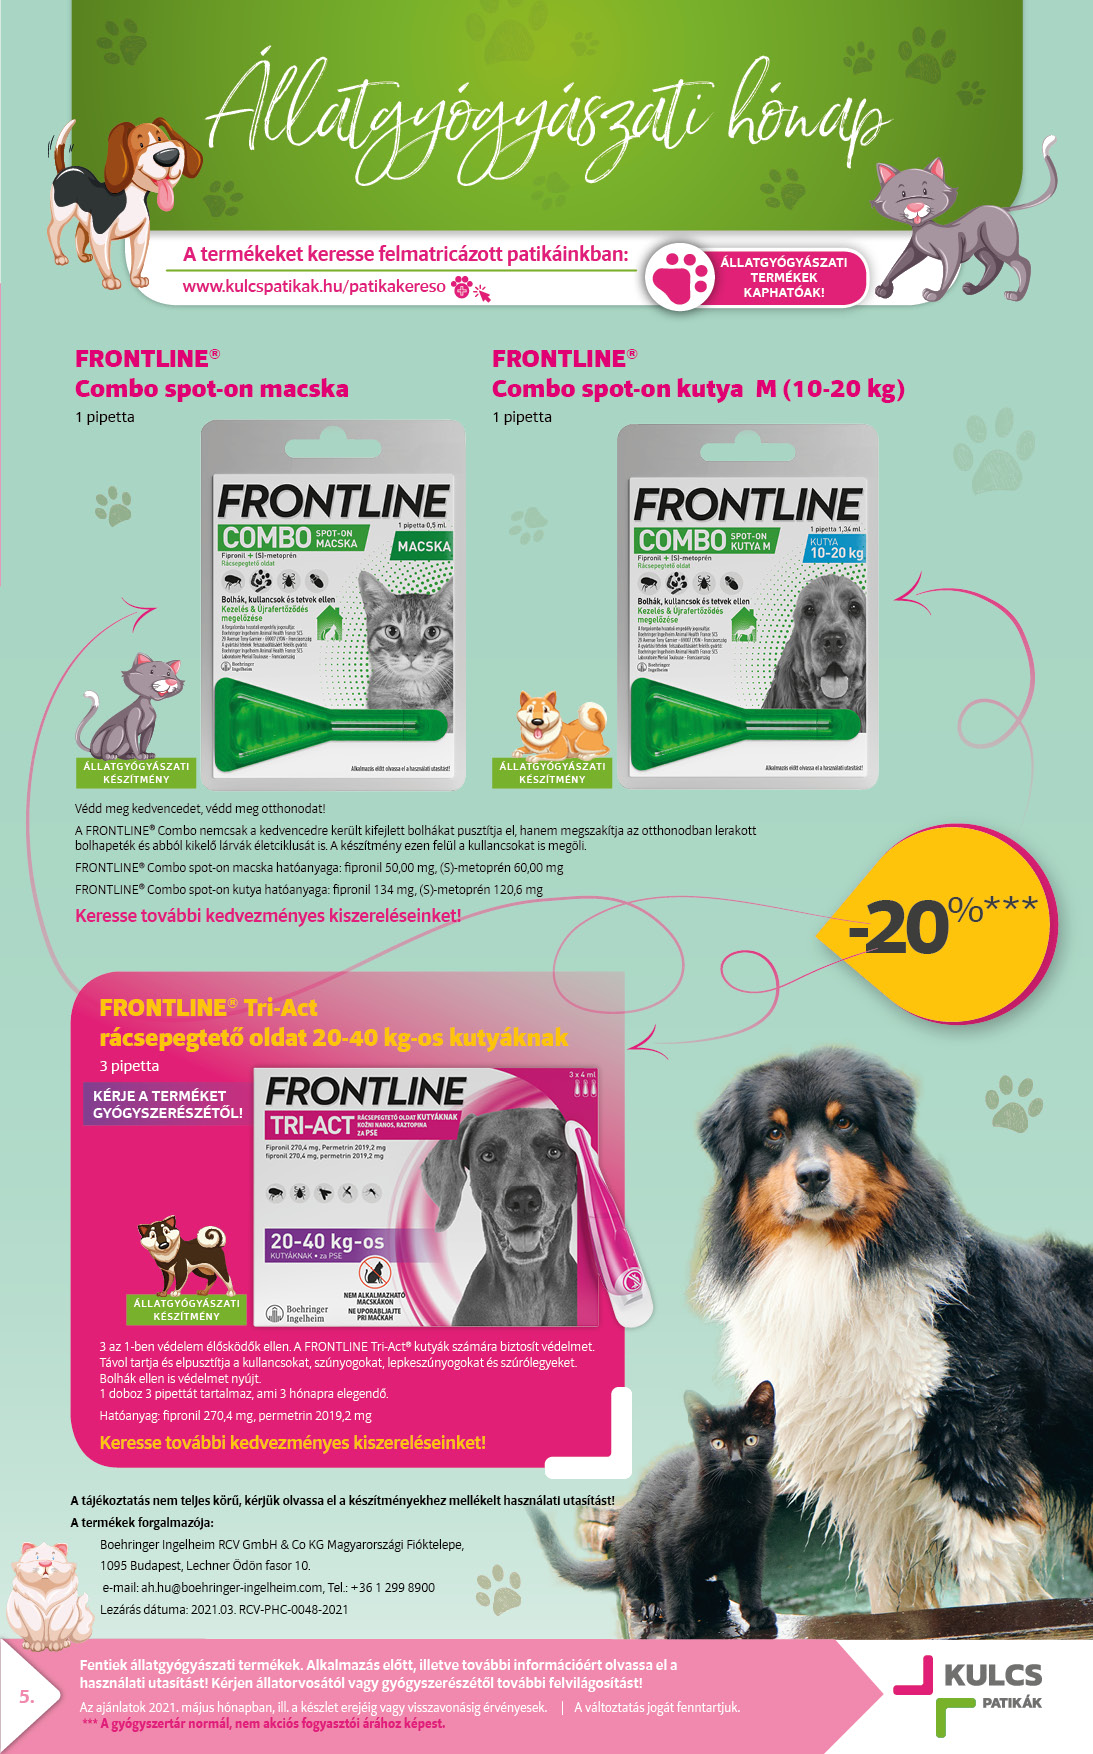 A Frontline termékcsalád egyes termékei májusban akciósan elérhetőek